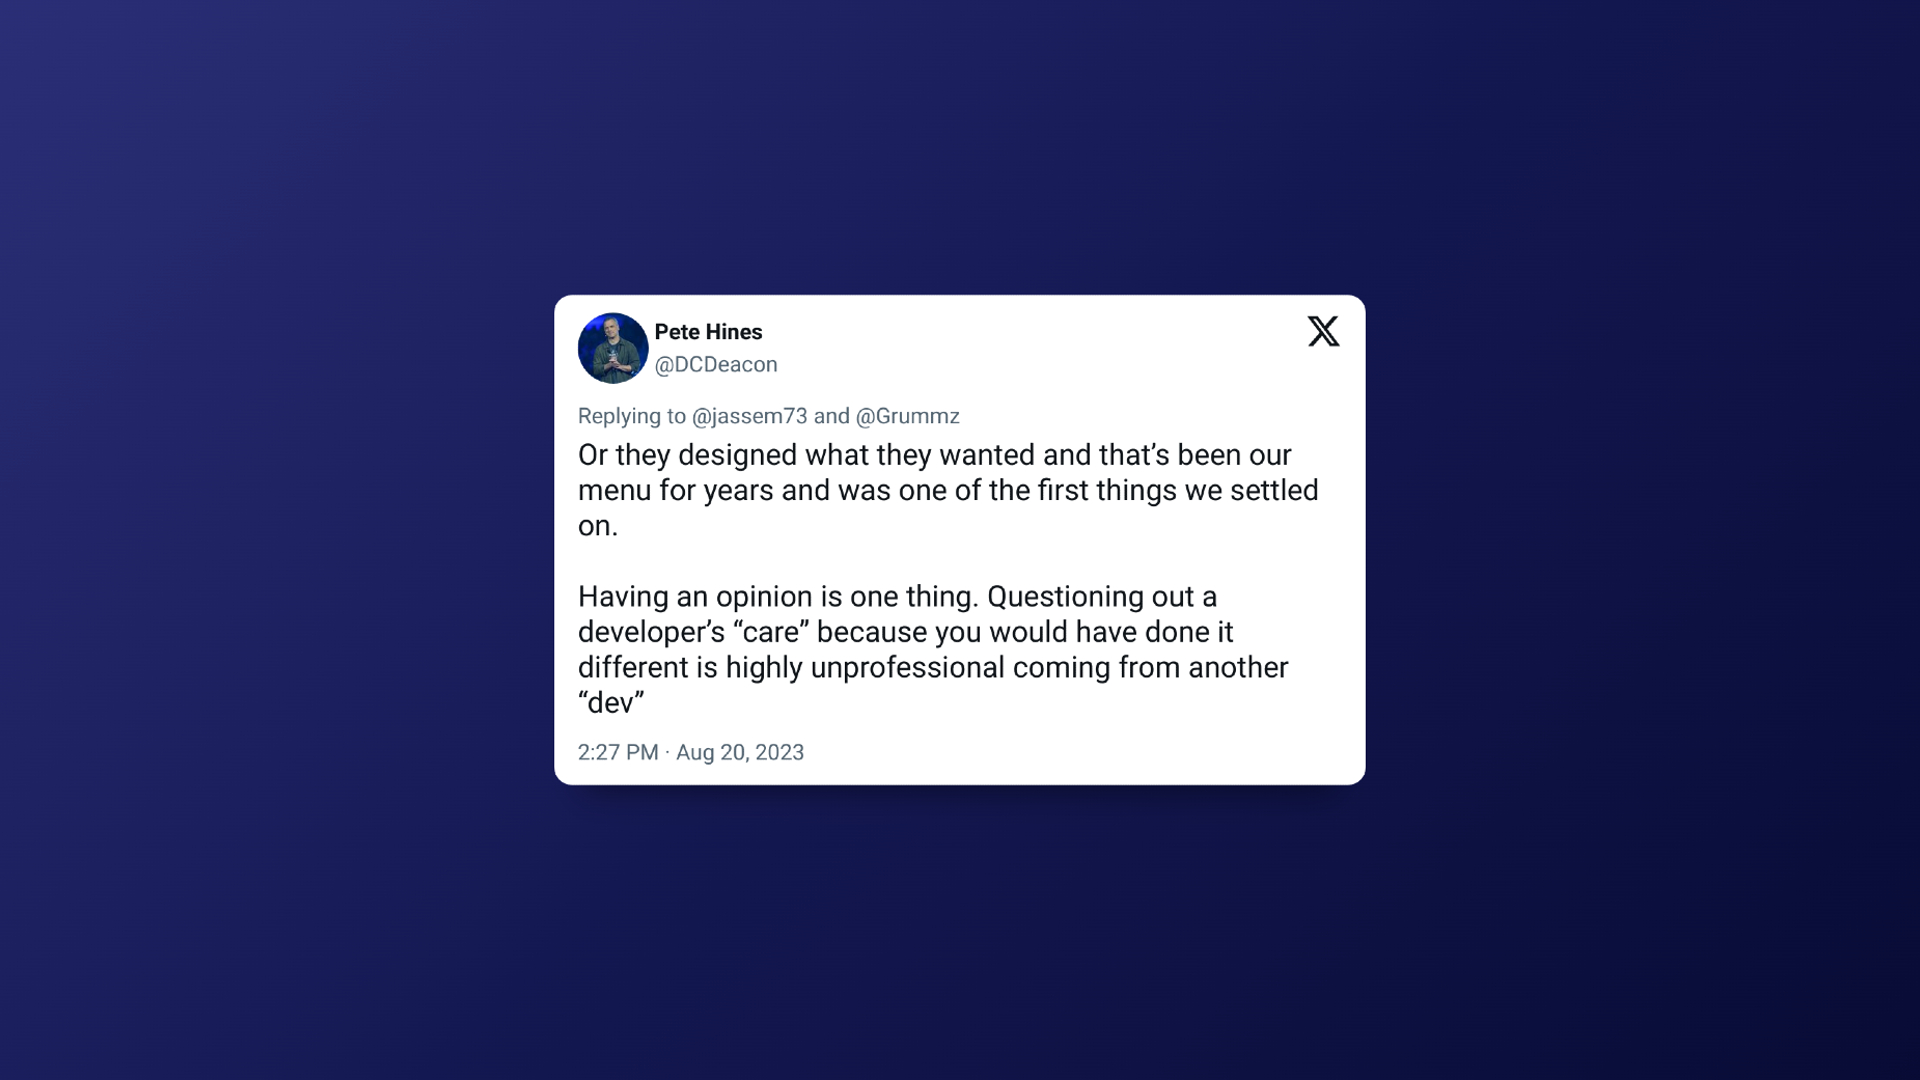 Tweet von Pete Hines als Antwort auf die Kritik am Starfield-Menü